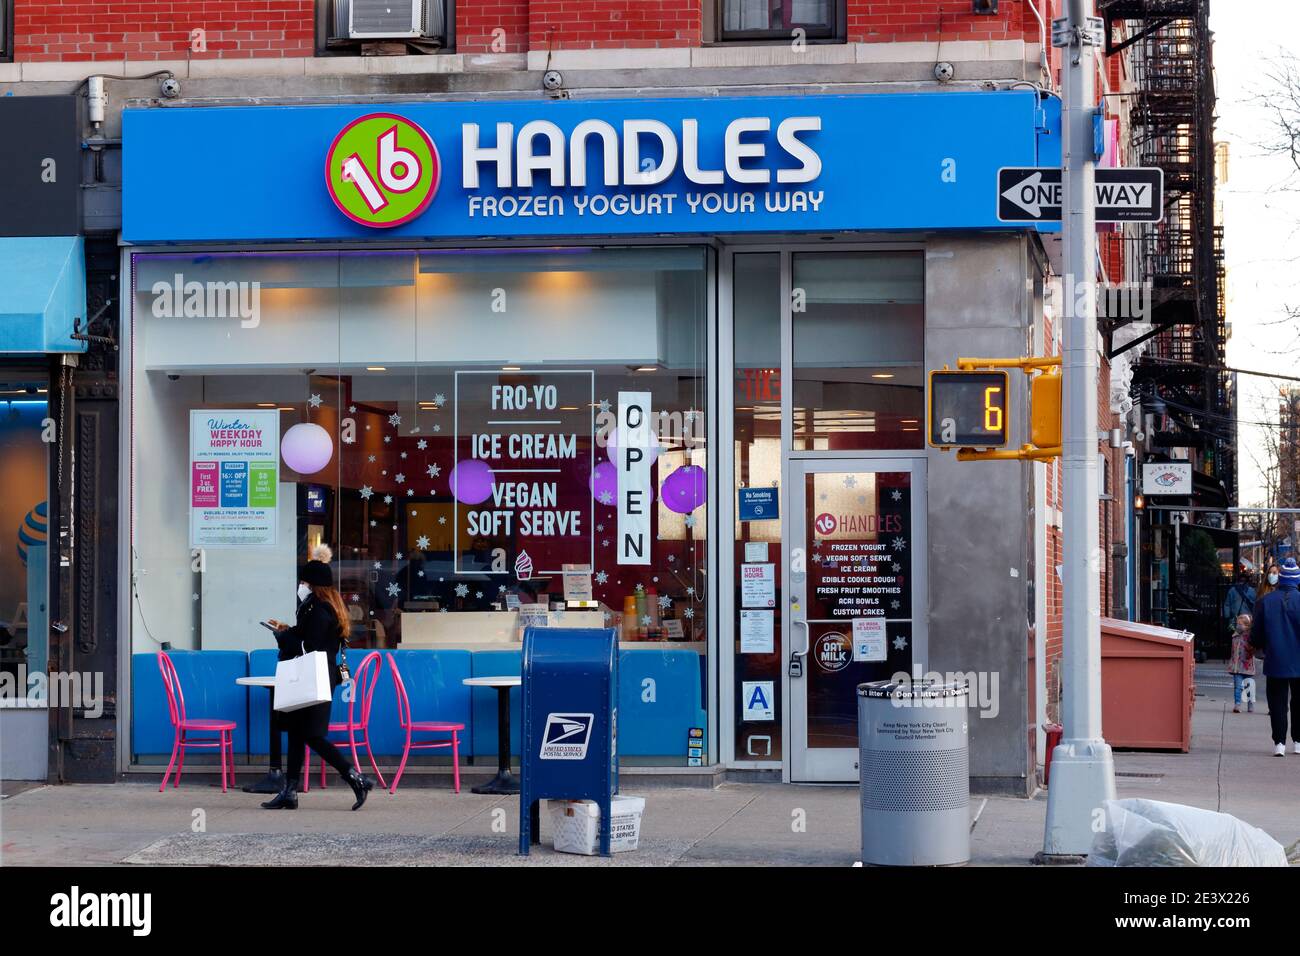 16 Handles, 178 8. Ave, New York, NYC Schaufensterfoto eines gefrorenen Joghurtladens in Manhattans Chelsea-Viertel. Stockfoto